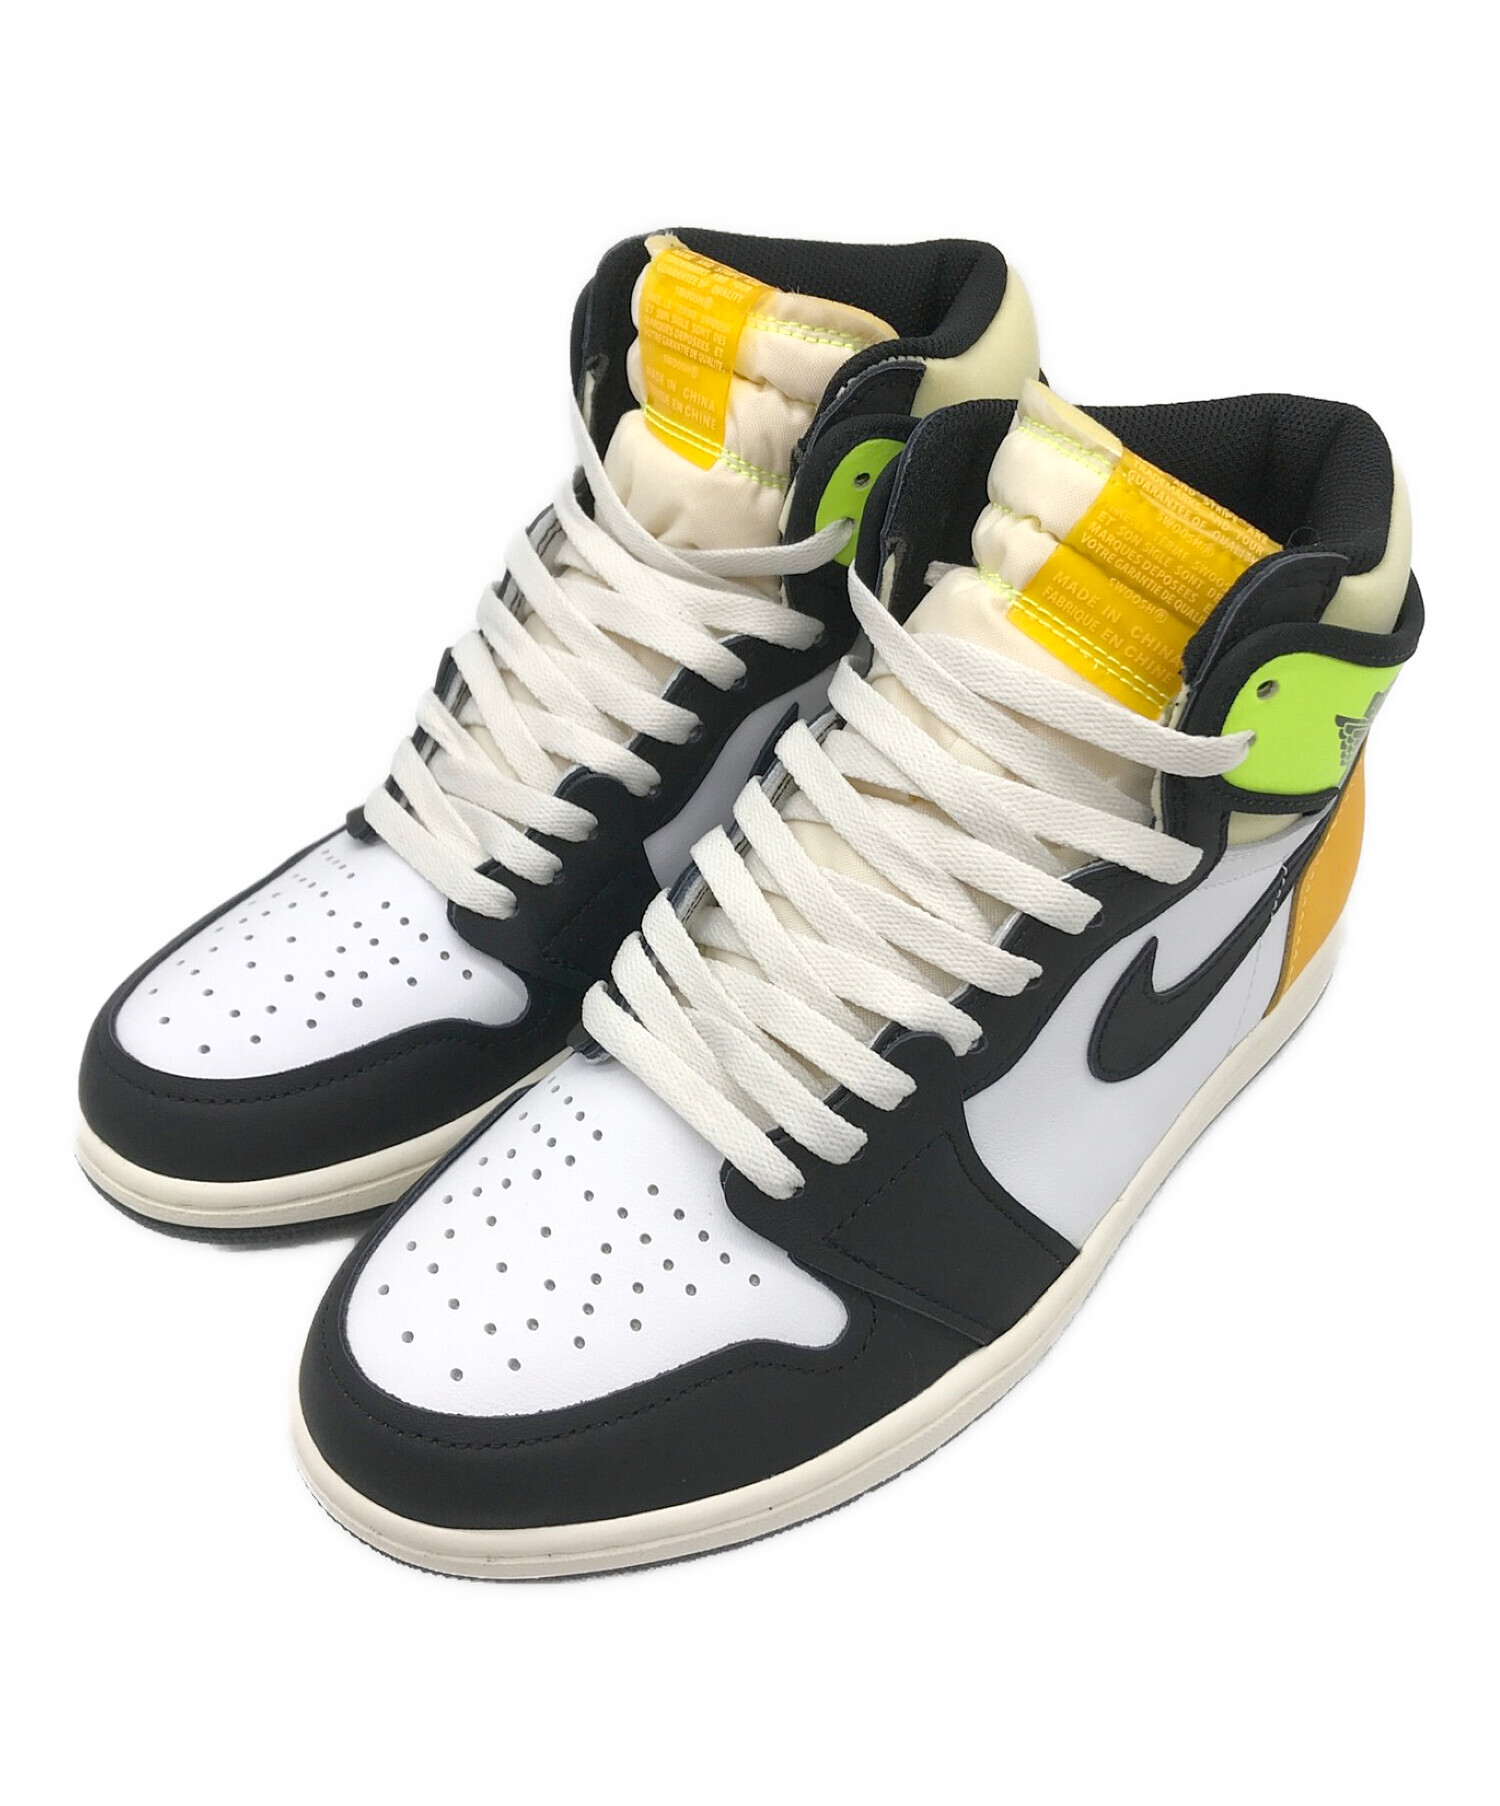 7,755円Nike Air Jordan 1 Retro High OG 27.5